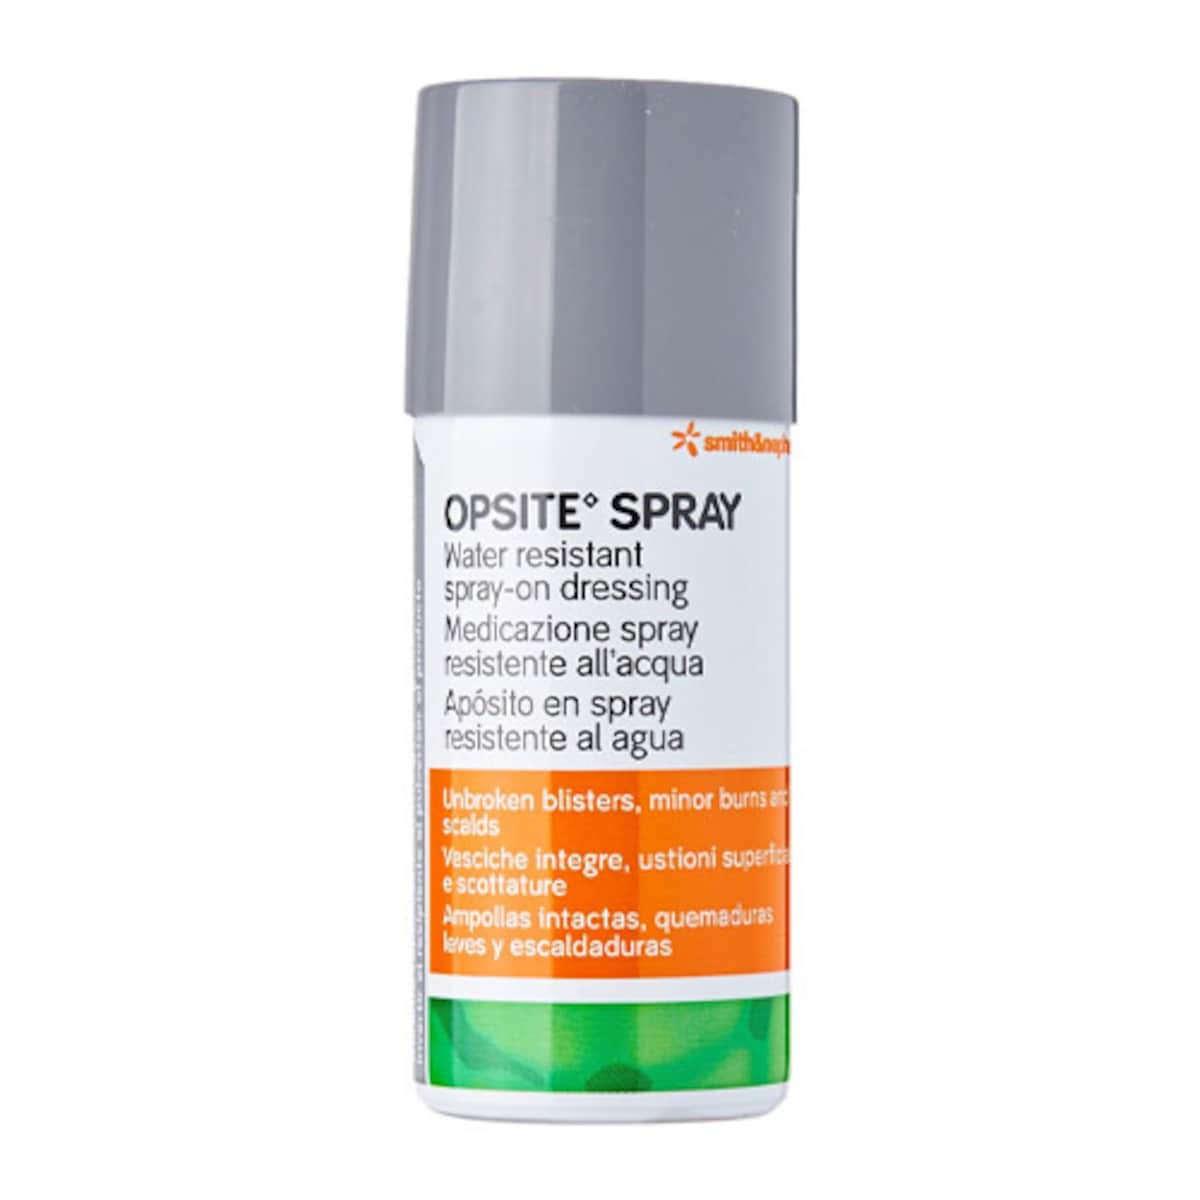 Opsite Spray-on Dressing 100ml by Smith & Nephew